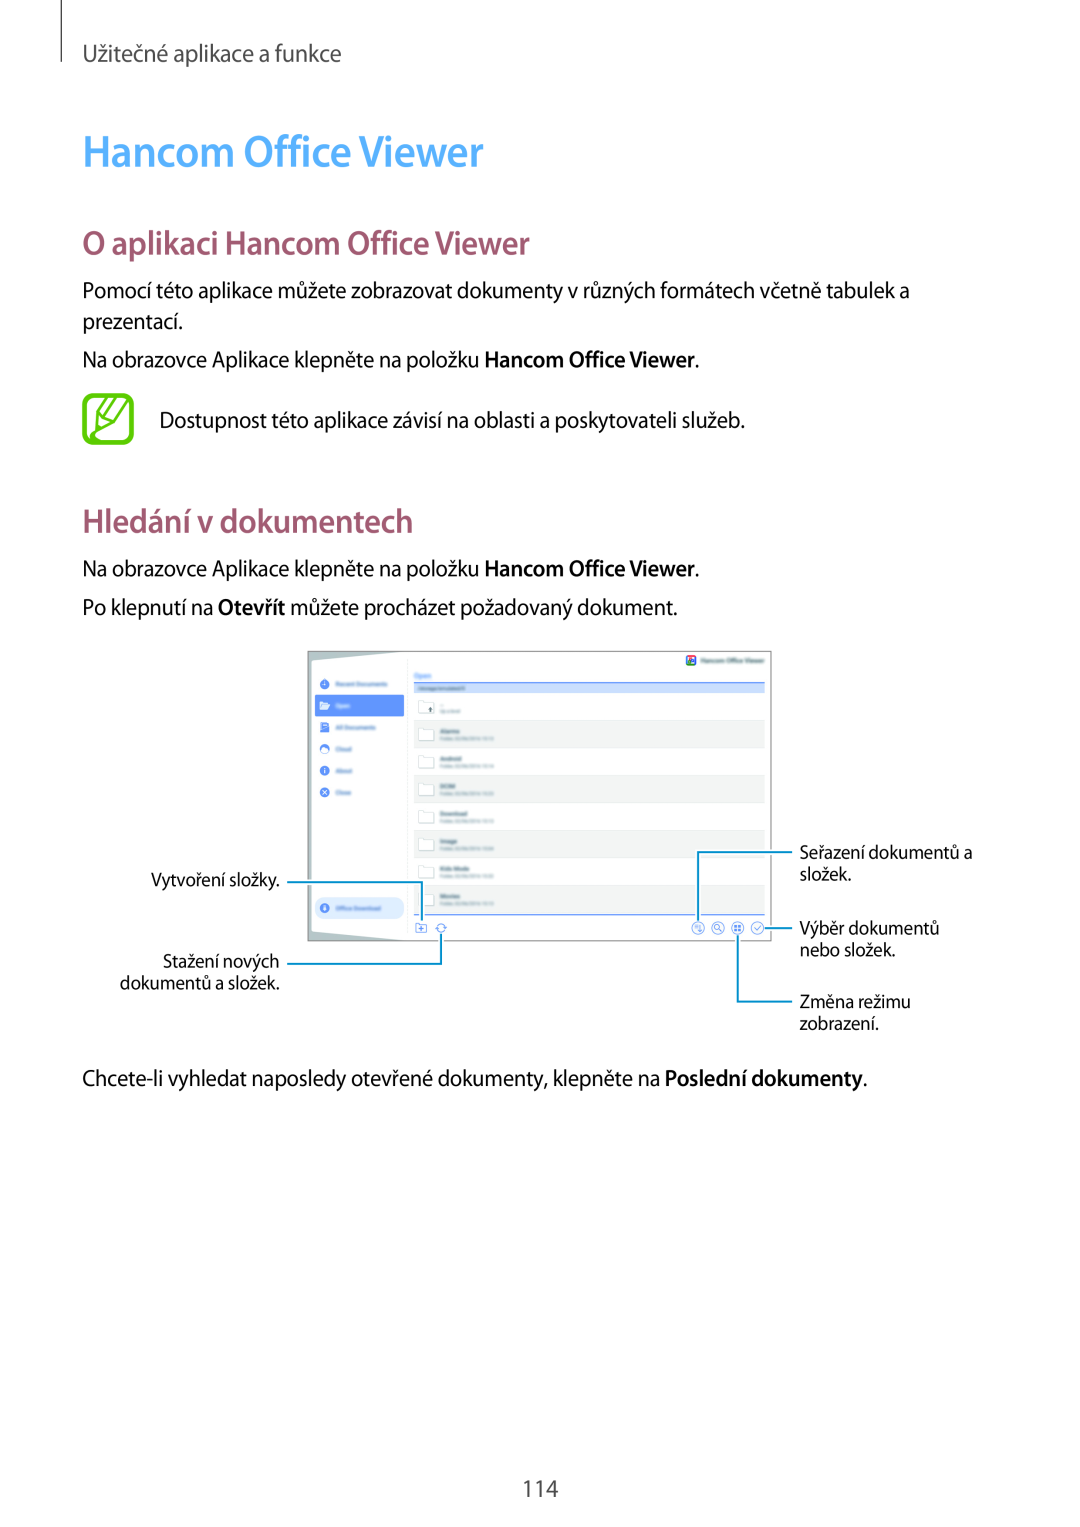 Samsung SM-T805NTSAATO manual O aplikaci Hancom Office Viewer, Hledání v dokumentech, Užitečné aplikace a funkce 